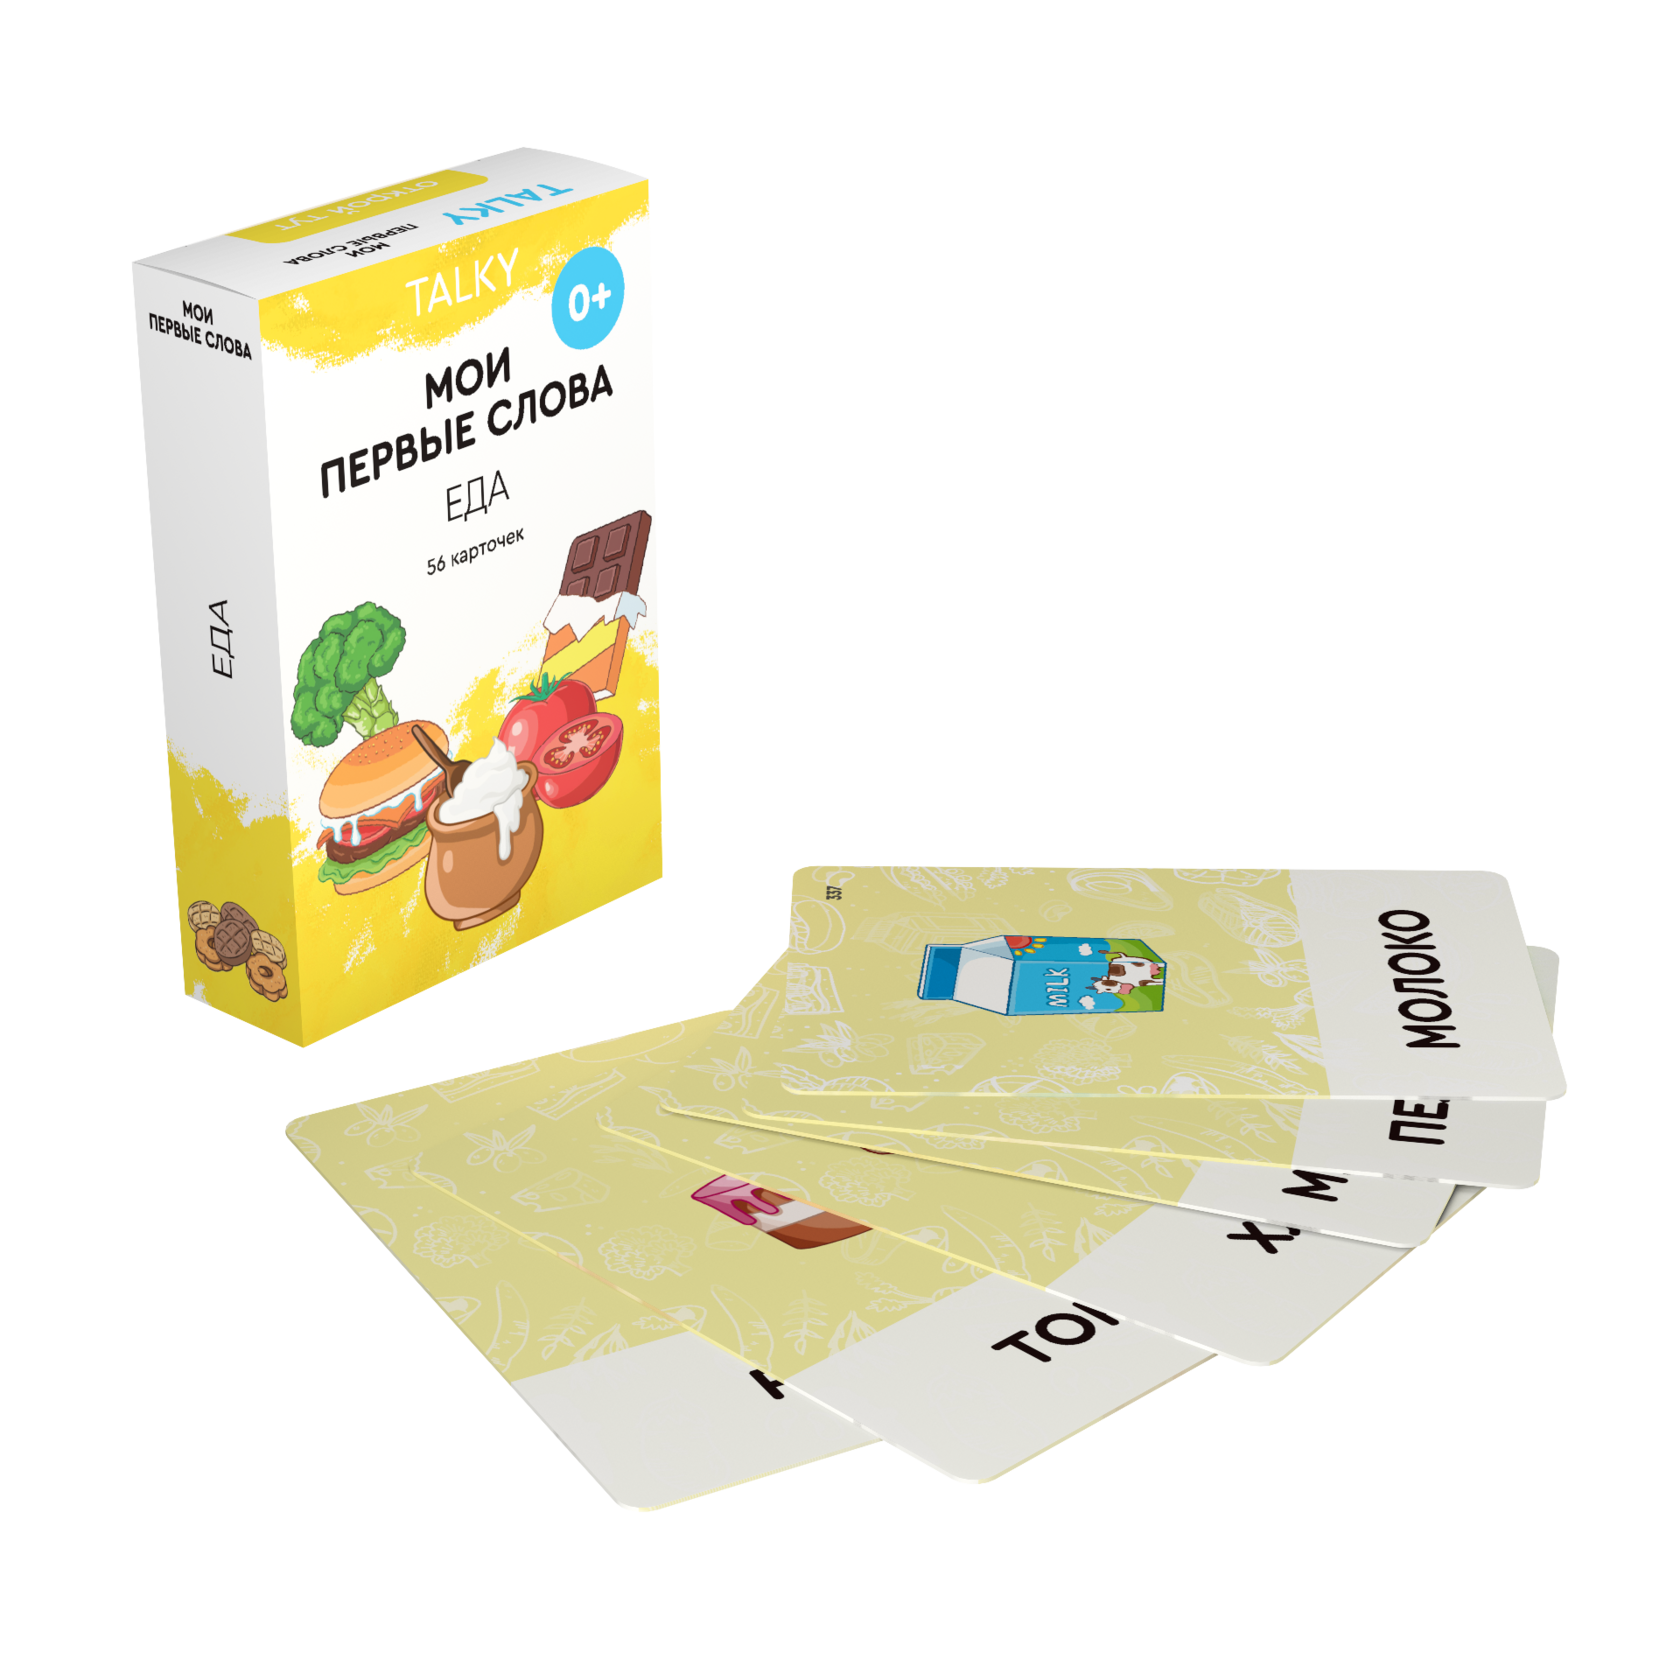 Развивающие карточки для детей LUMICUBE для TALKY, еда, 56шт. KDTKR02-FOOD